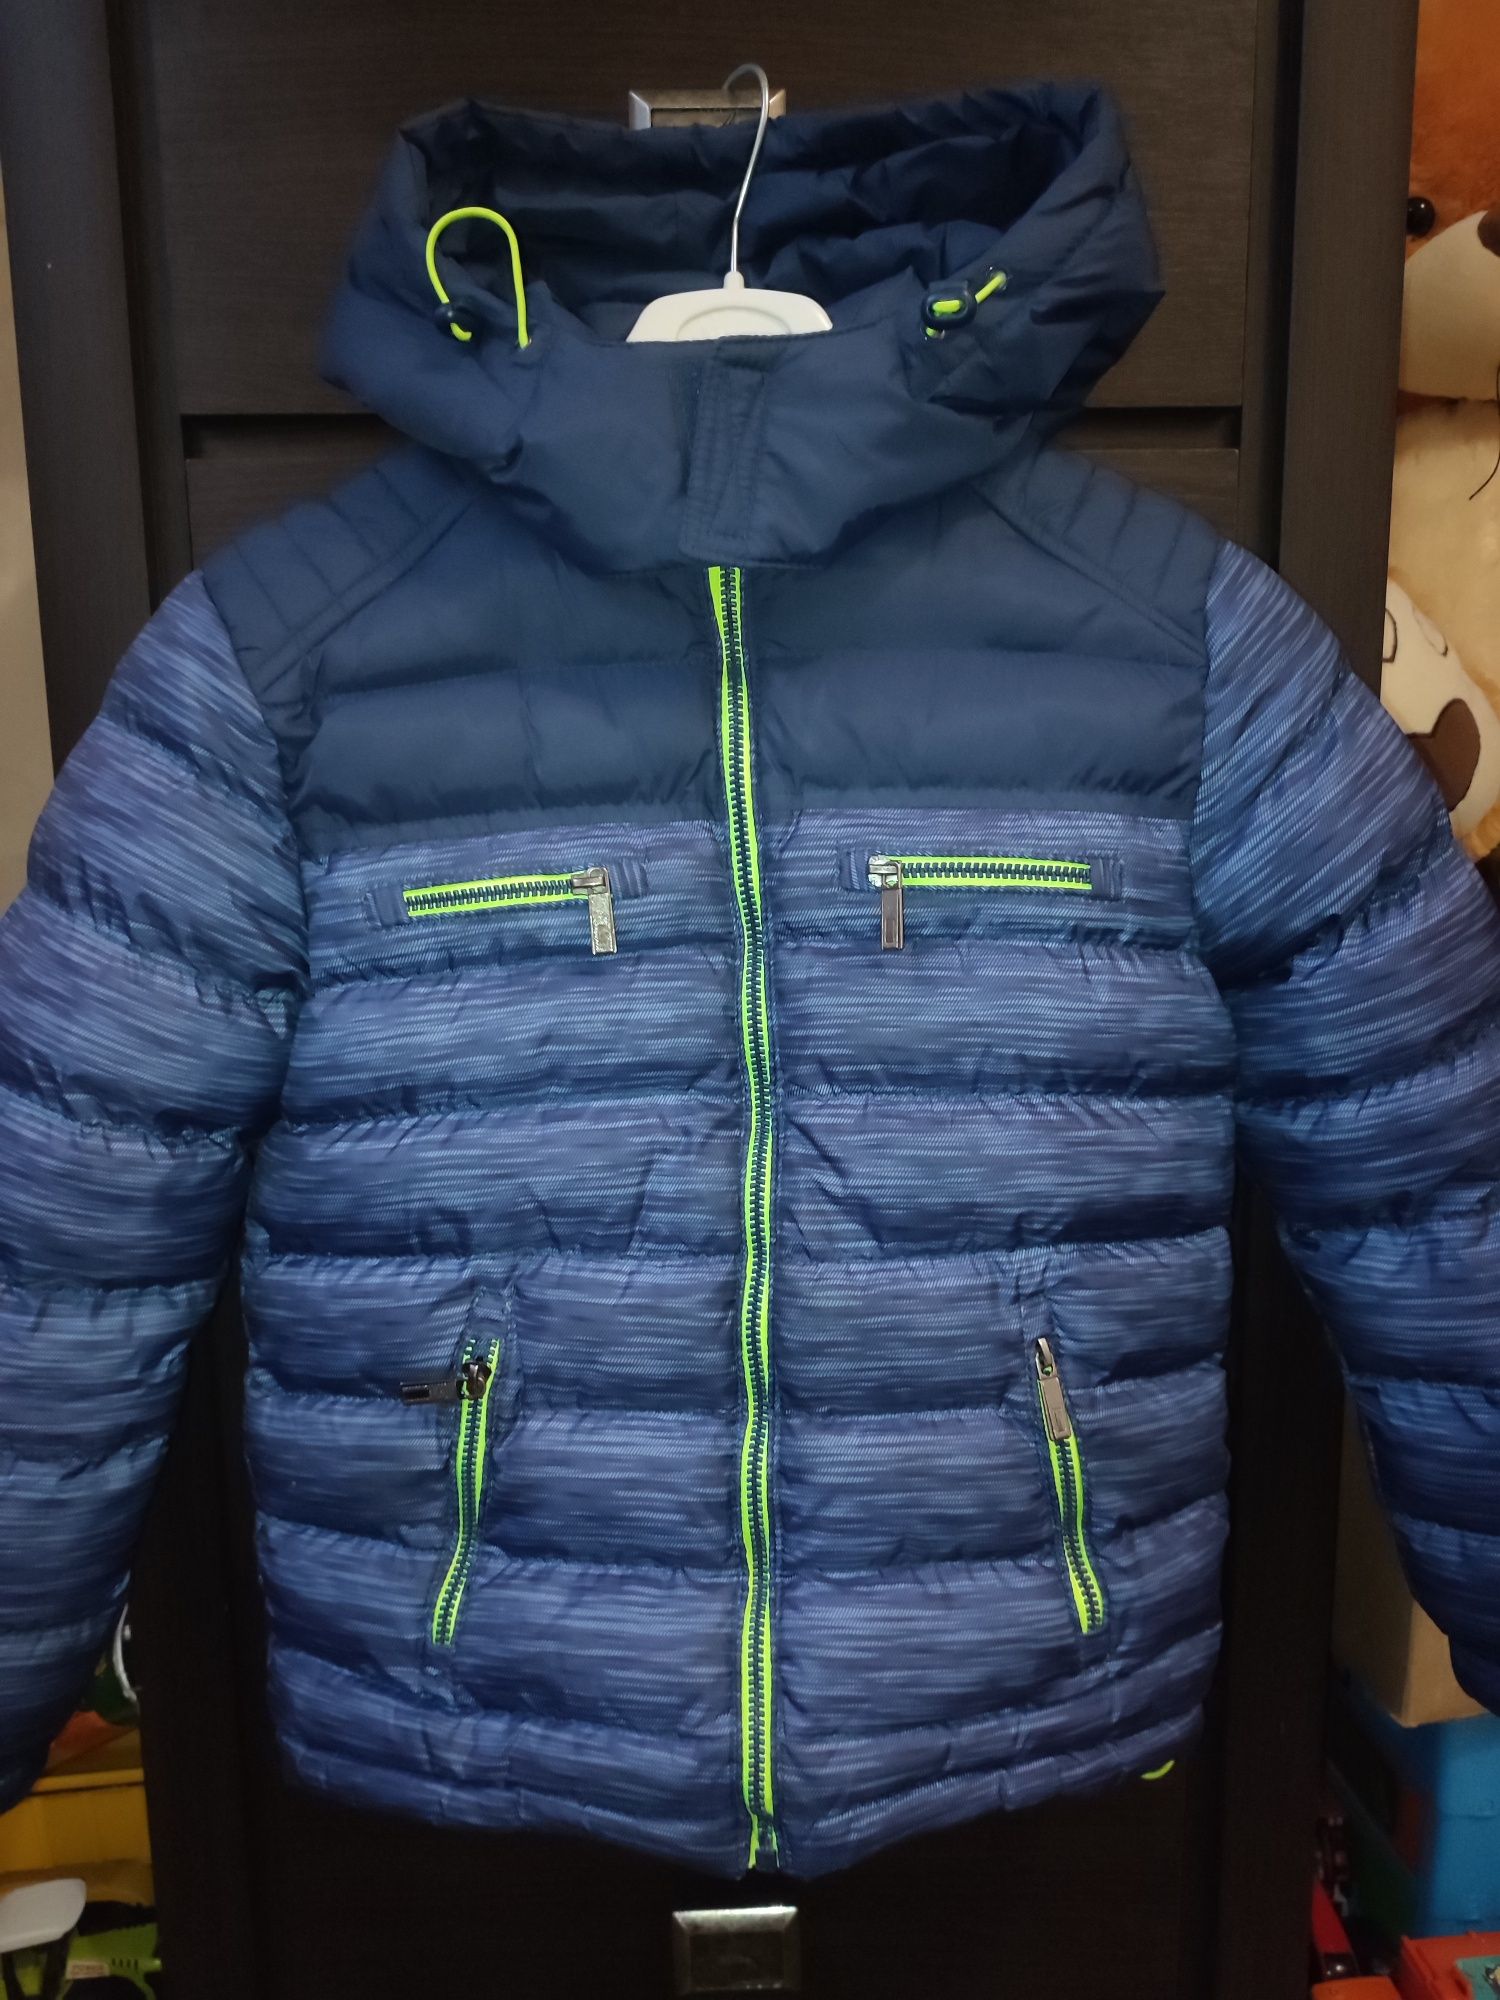 Куртка зимова на хлопчика